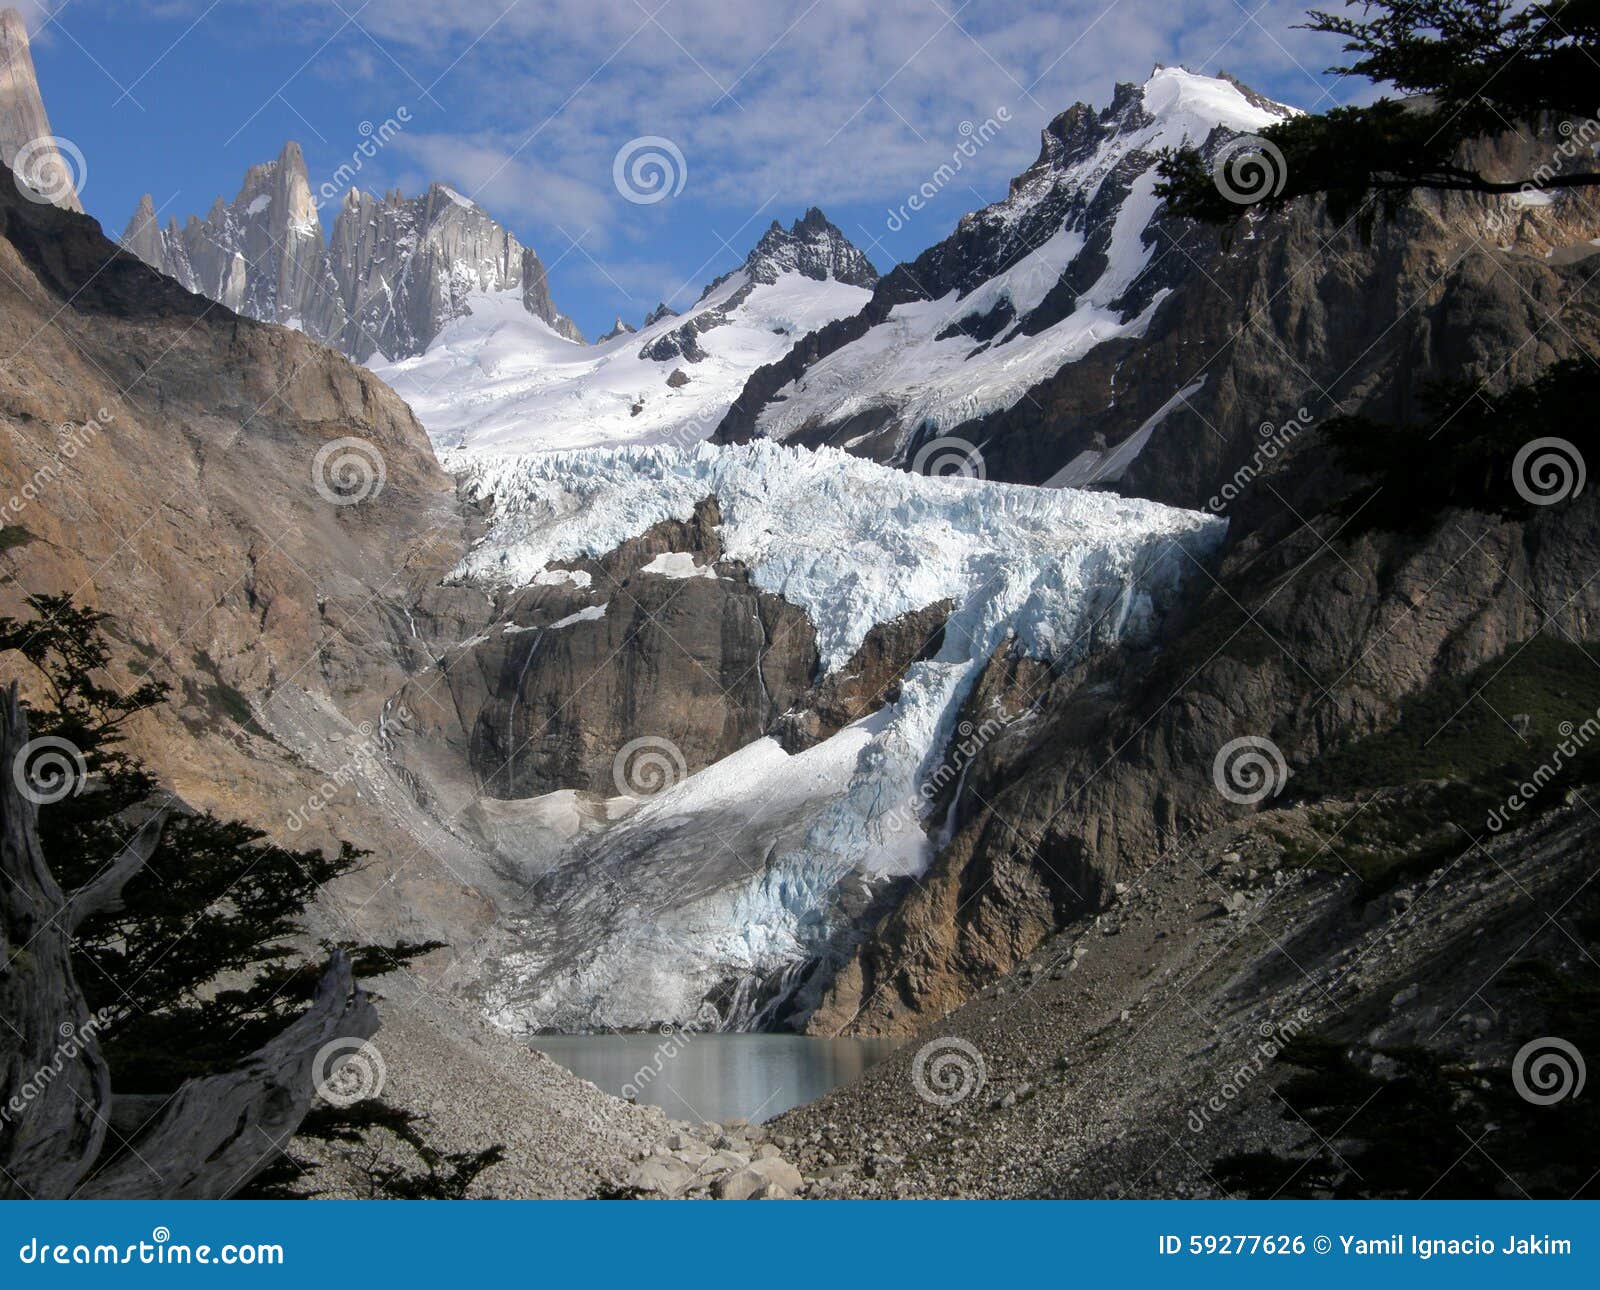 glaciar piedras blancas, patagonia, argentina